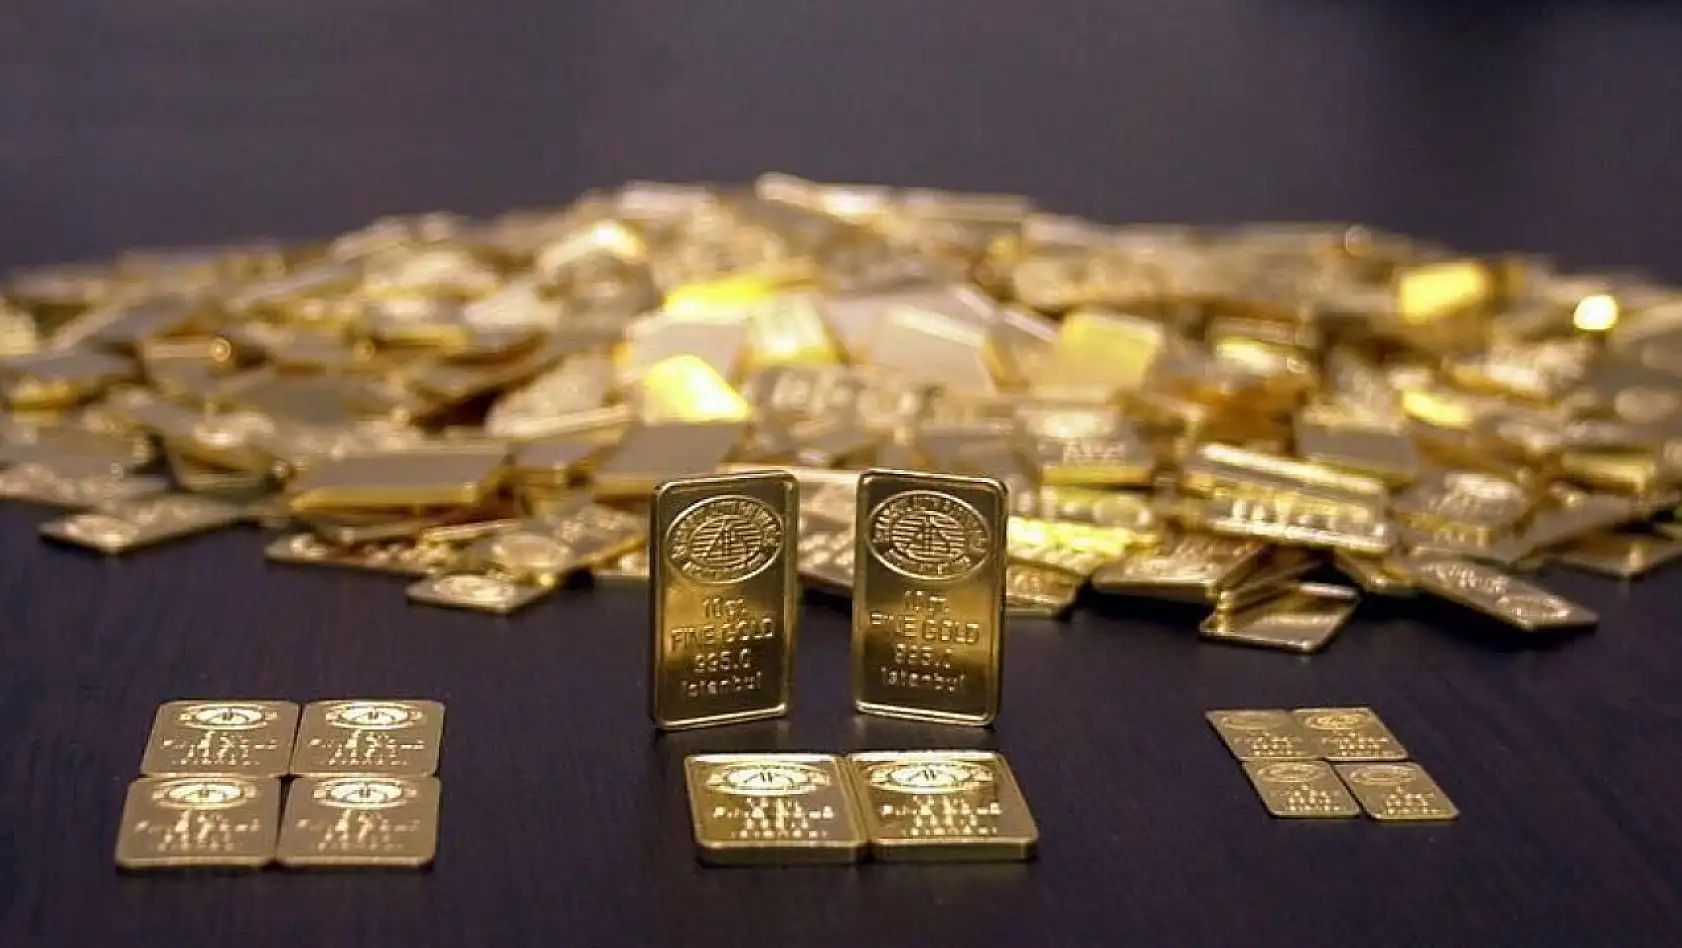 Altın fiyatları haftaya nasıl başladı?